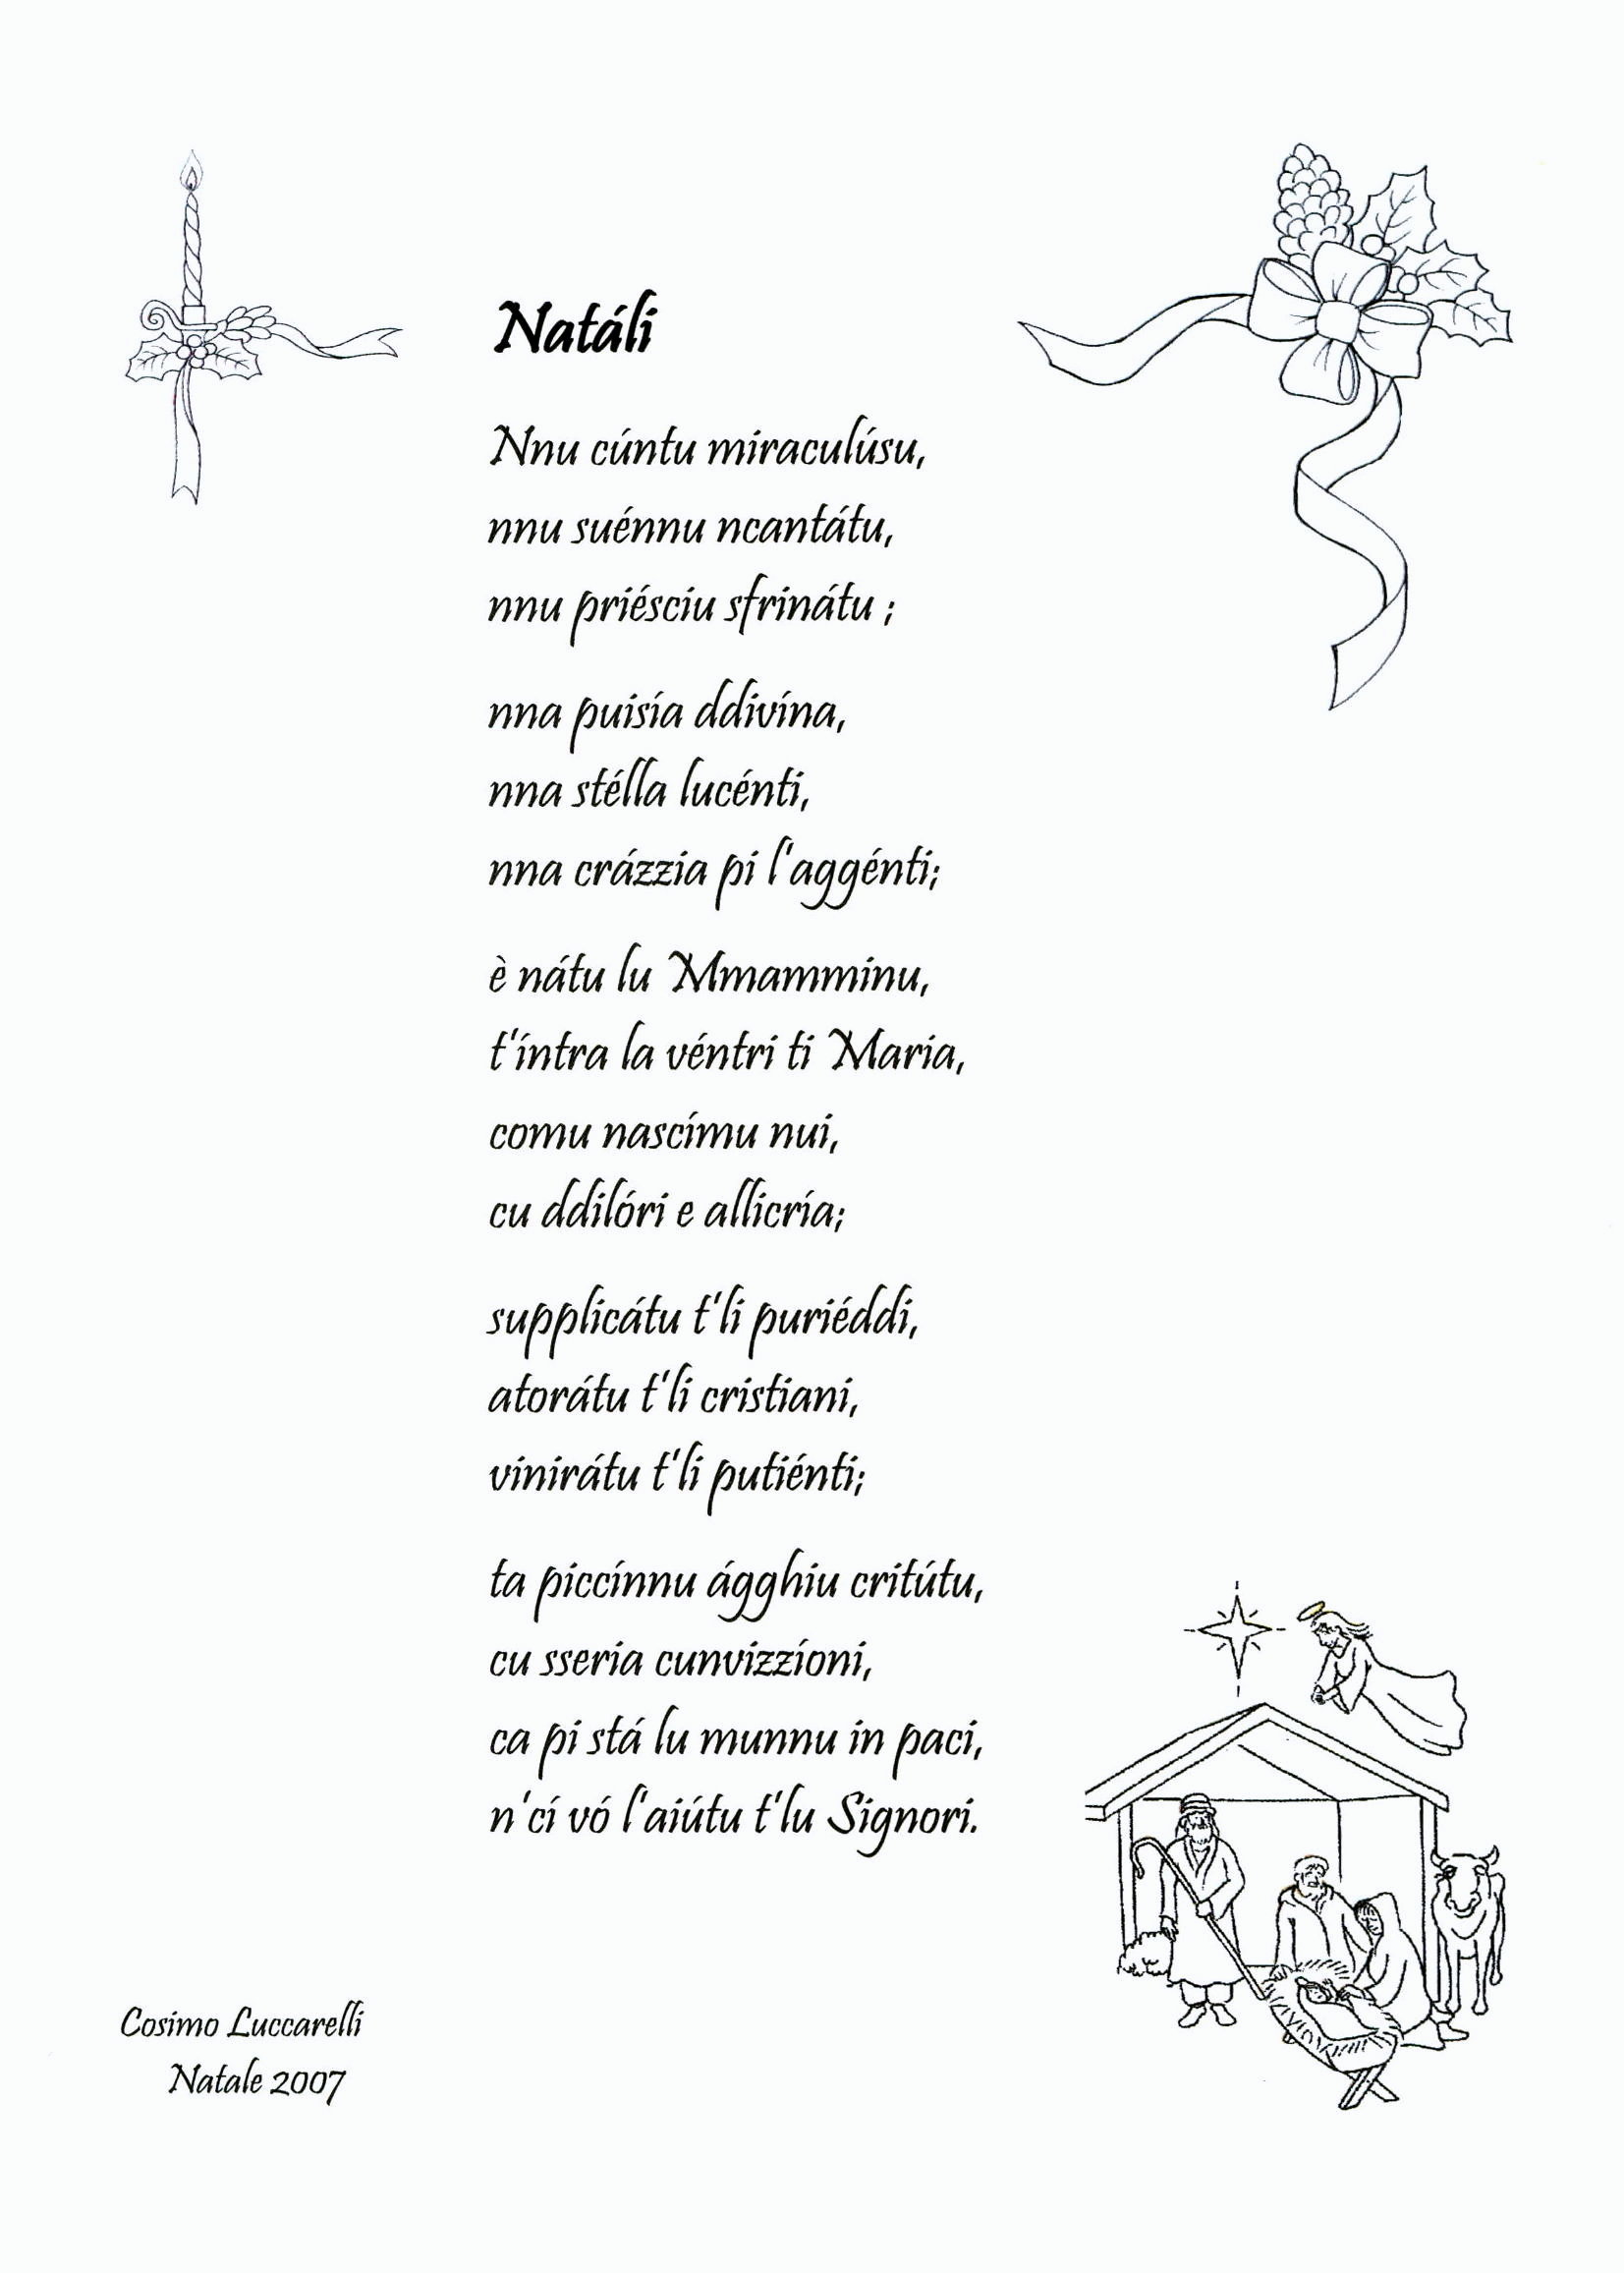 Poesie Di Natale In Dialetto.Antologia Di Poesie Dialettali Per Natale Grottagliesita Blog